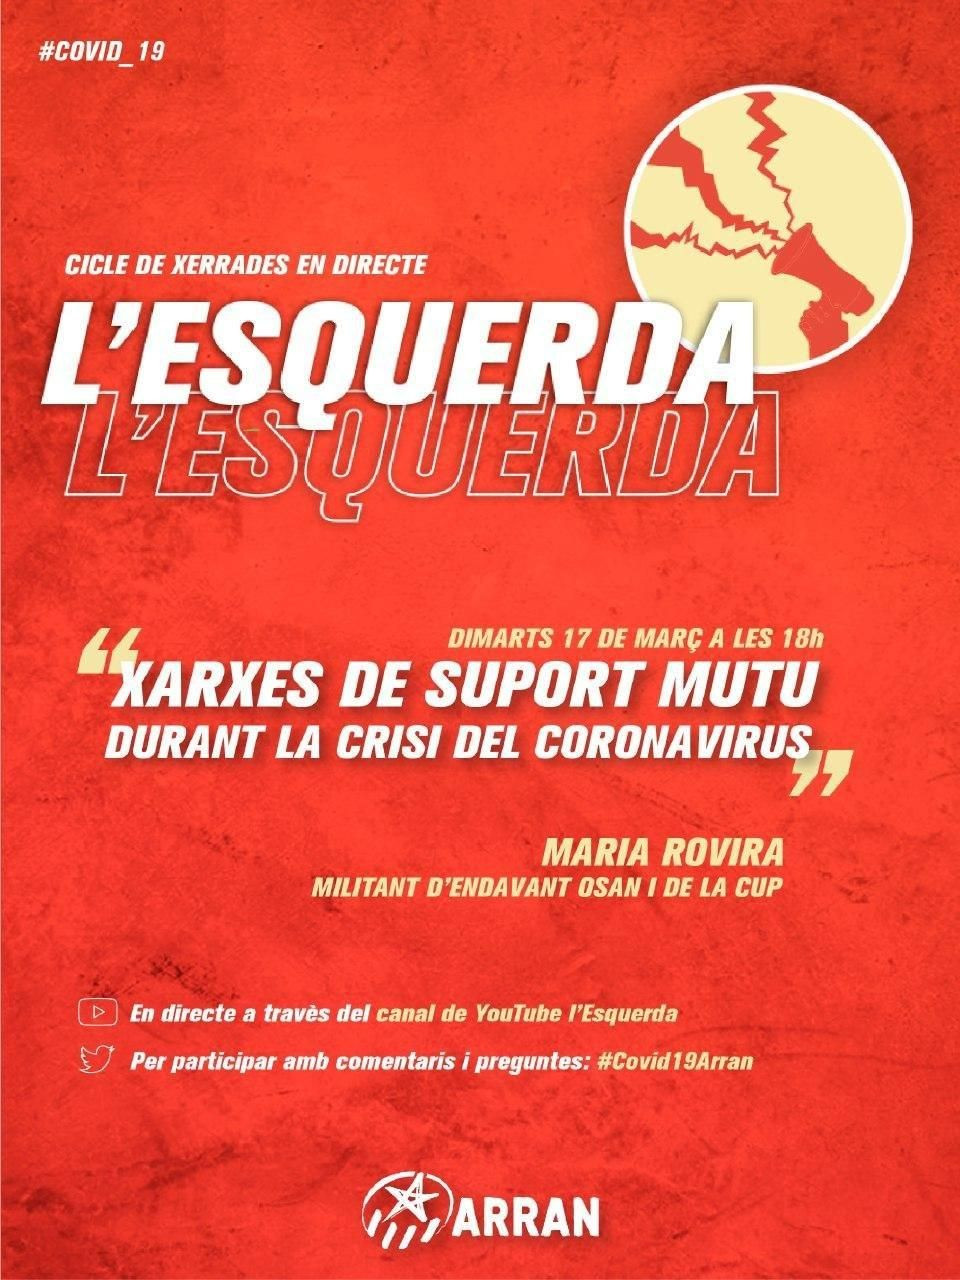 Un cartel de la Red de Apoyo Mutuo